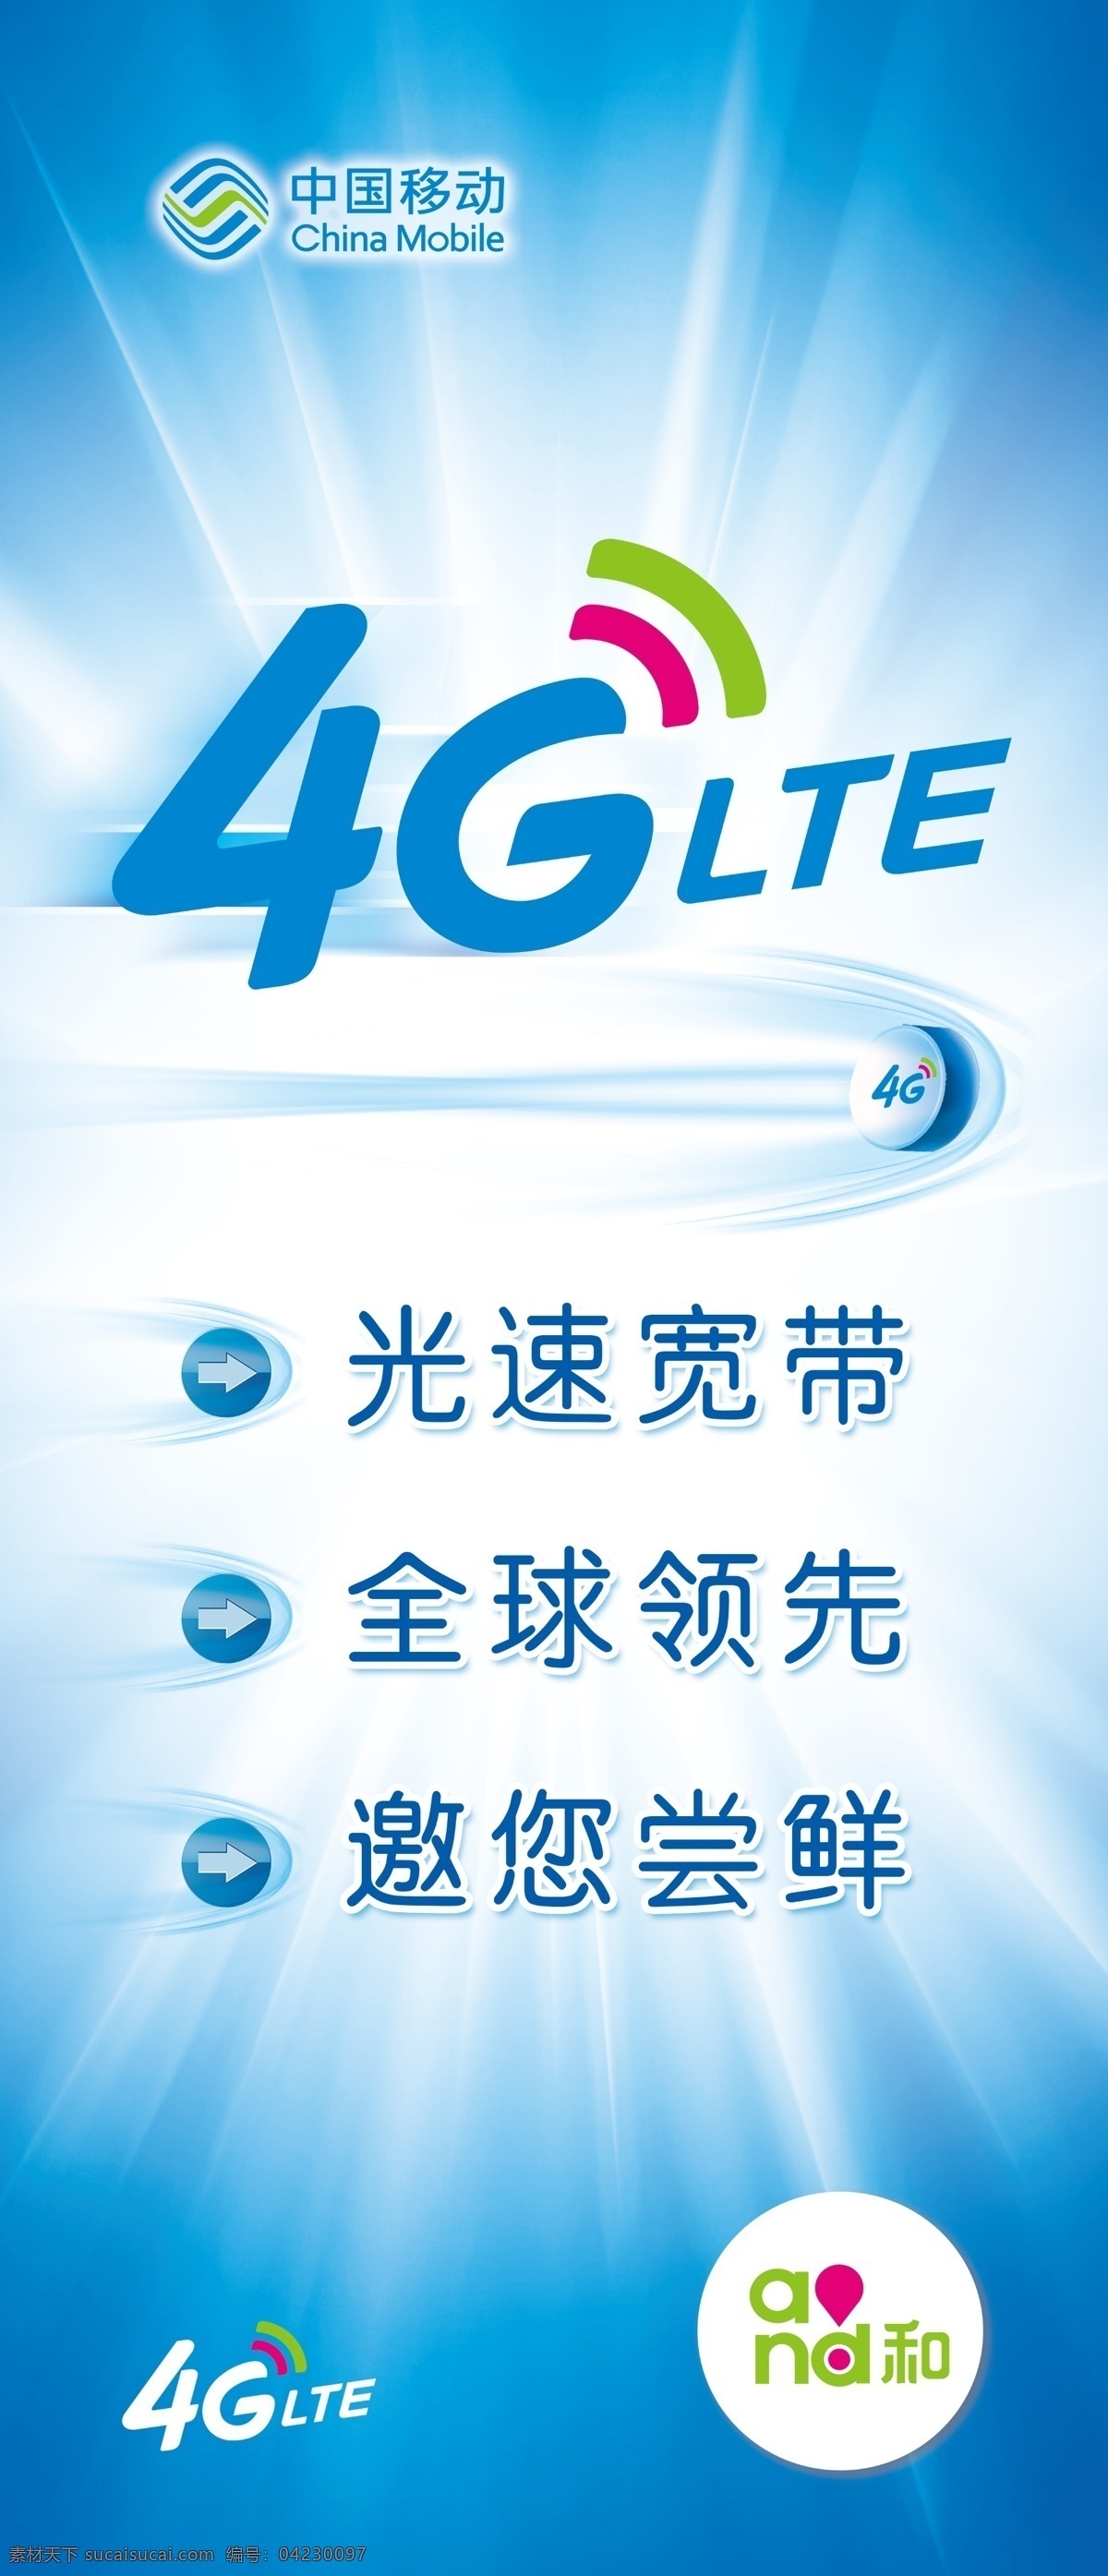 移动 4glte 4g and和 和你一起 快人一步 光速宽带 全球领先 邀您尝鲜 广告设计模板 源文件